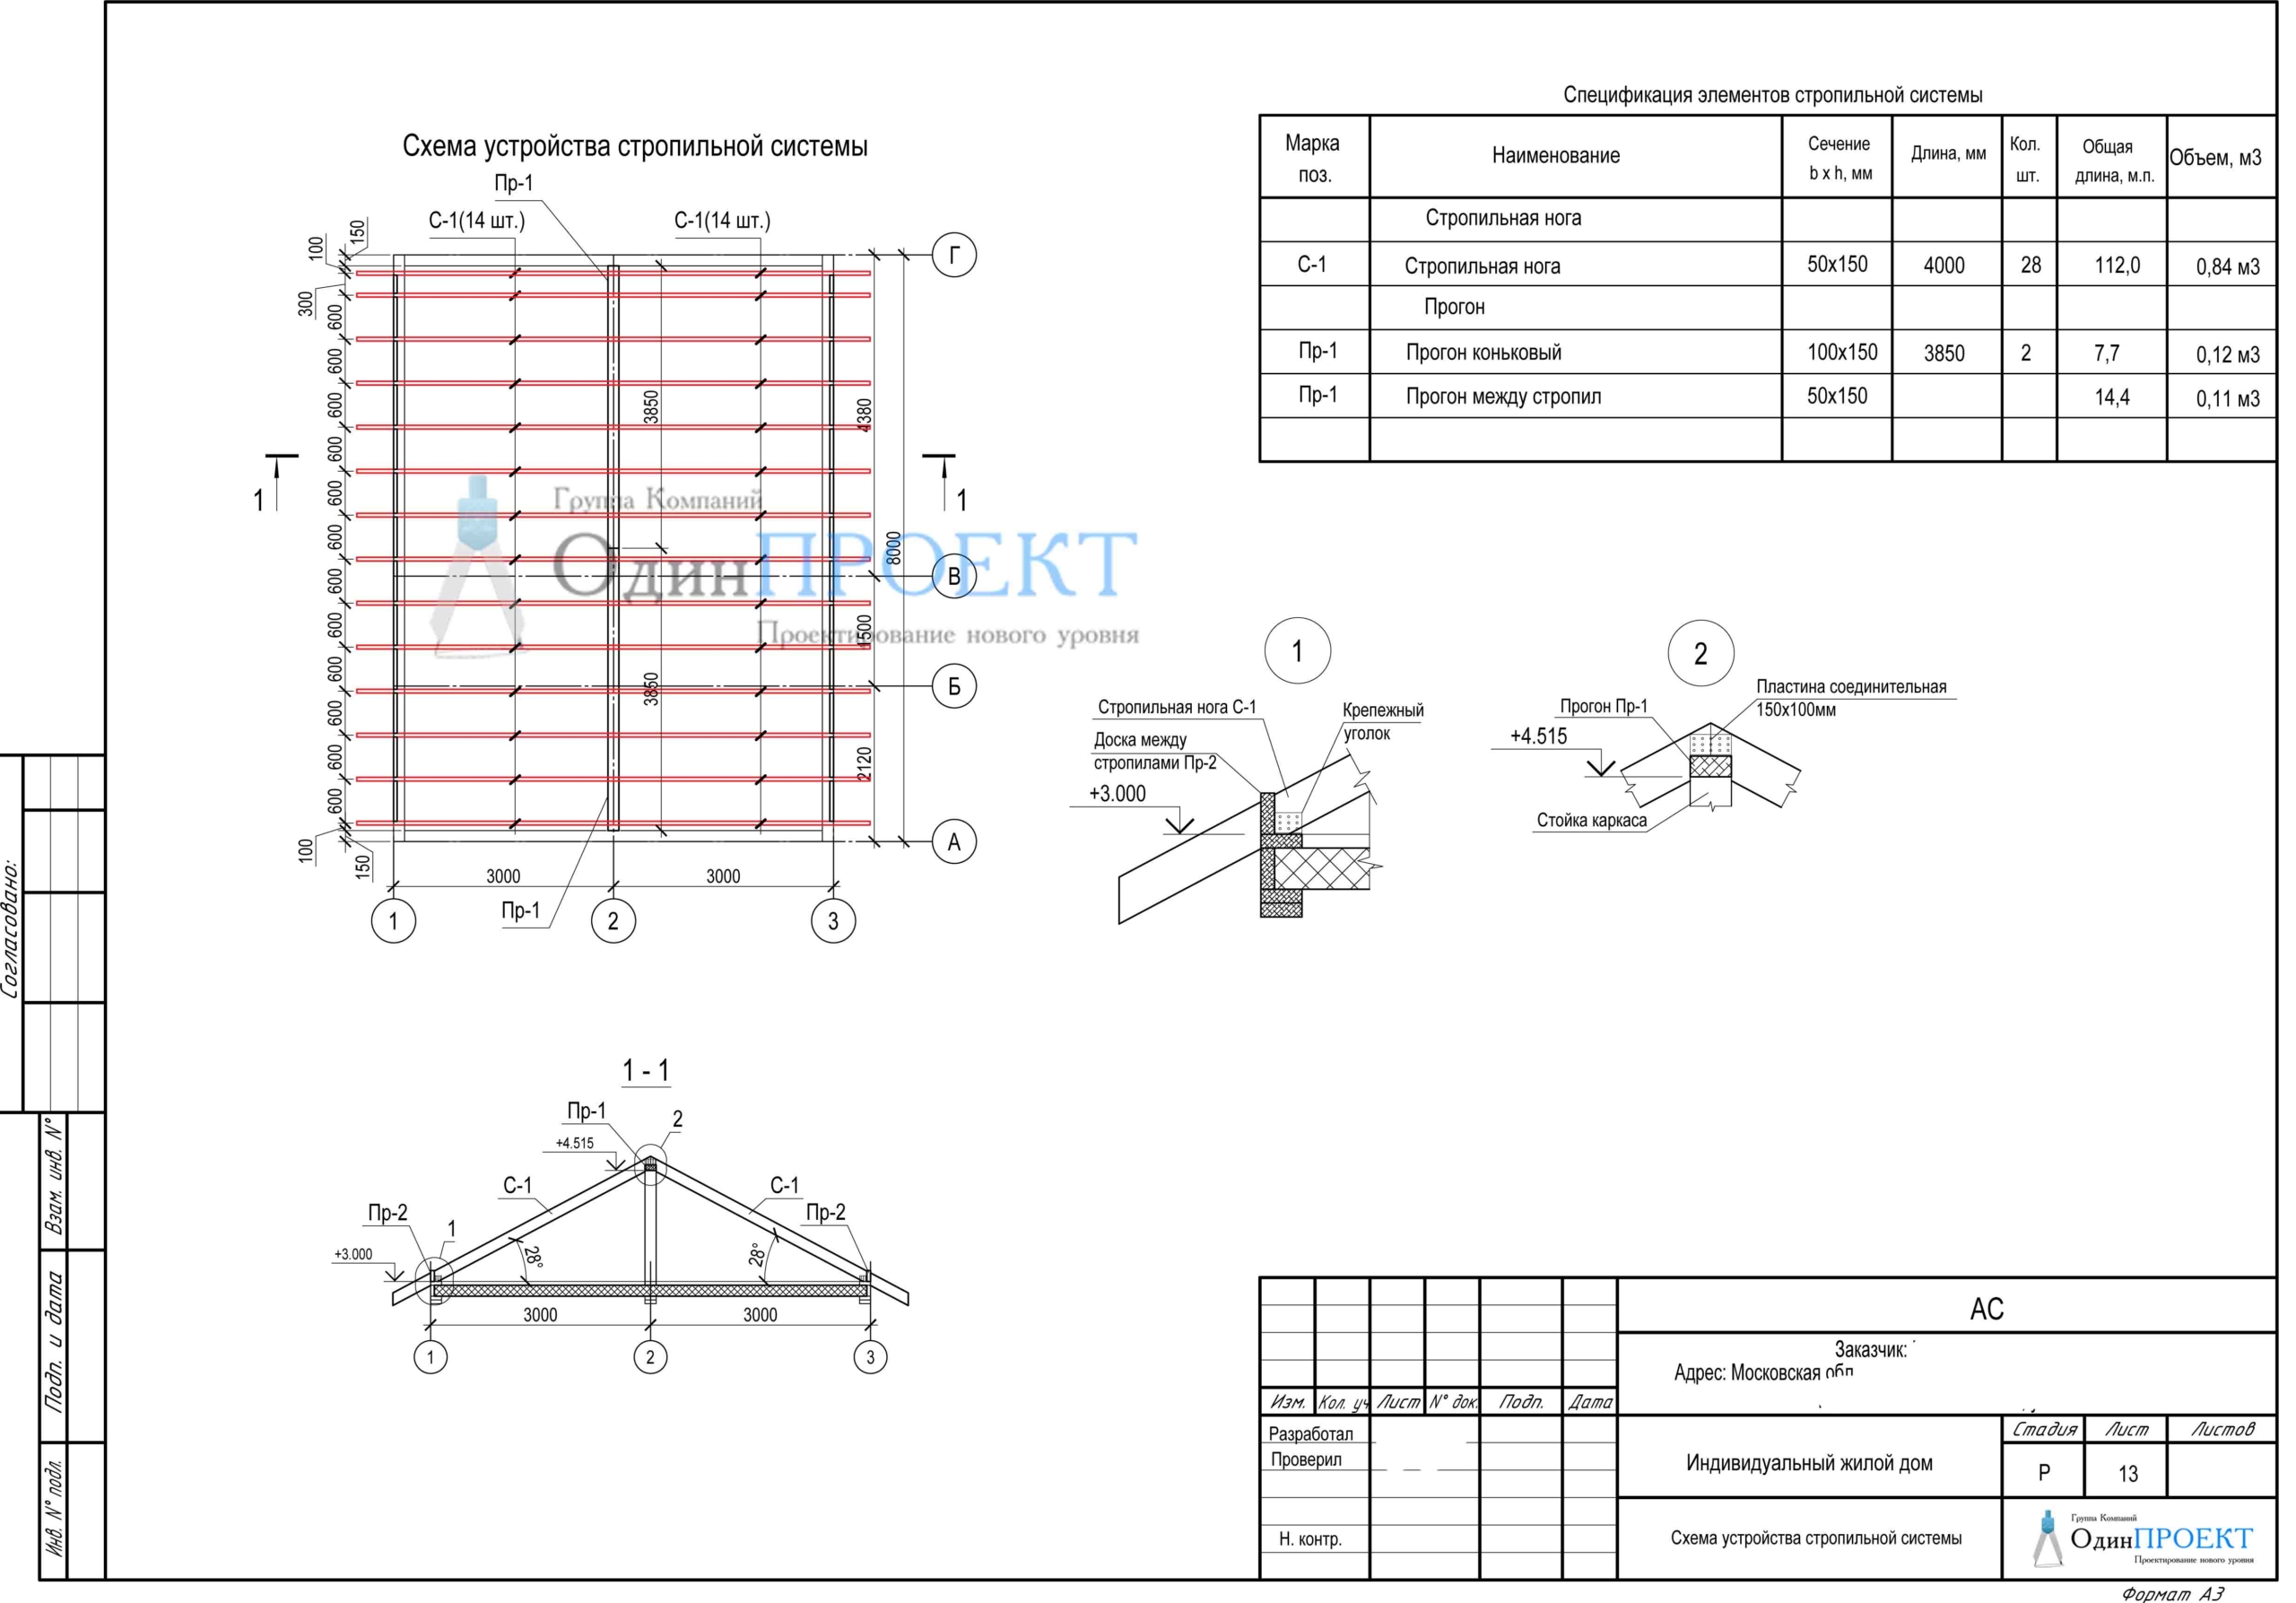 Спецификация деревянных элементов стропильной системы